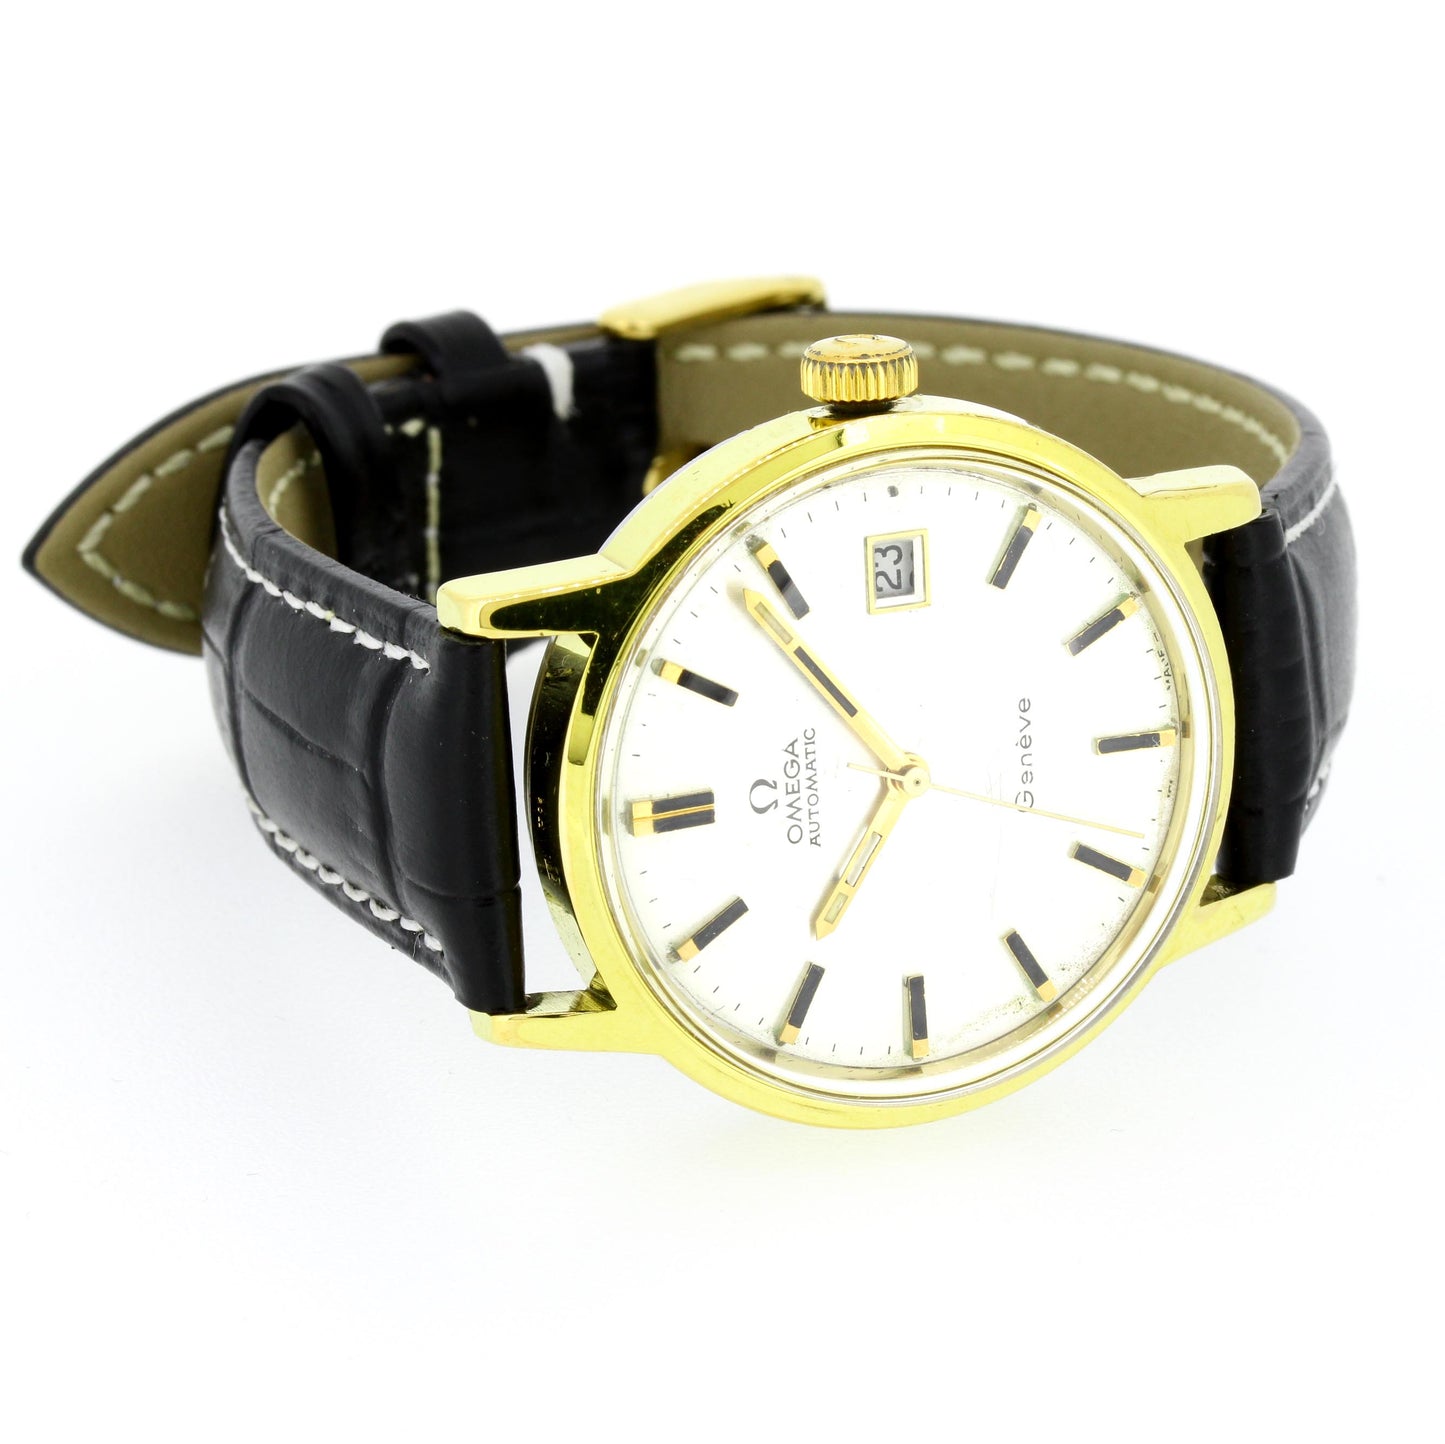 Omega Armbanduhr Geneve 1481 automatik vergoldet